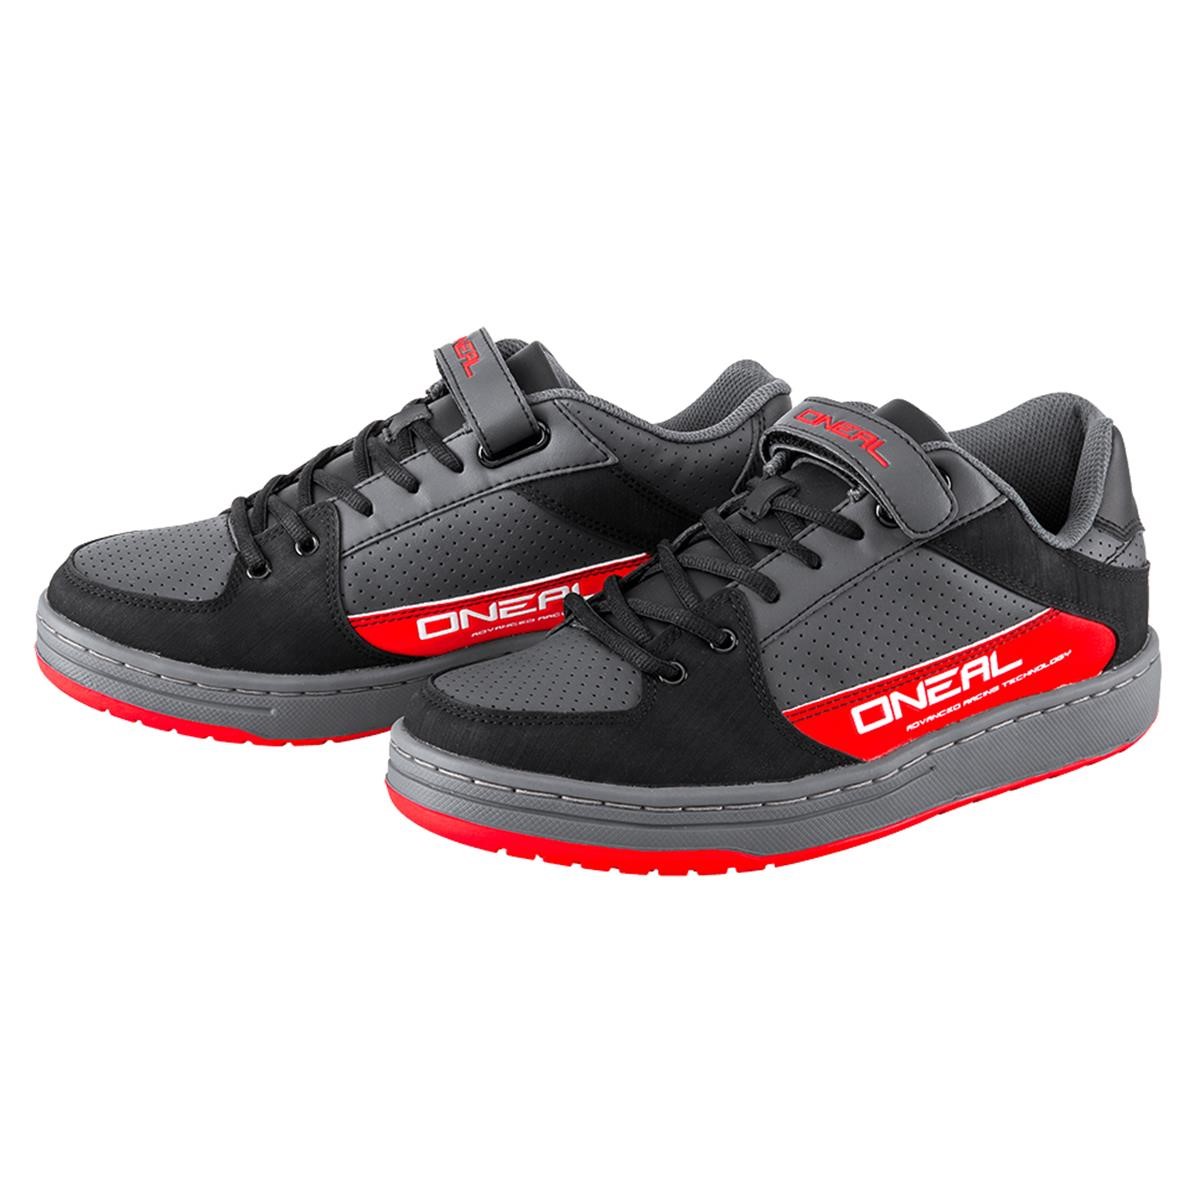 O'Neal Chaussures VTT Torque SPD Grey/Red